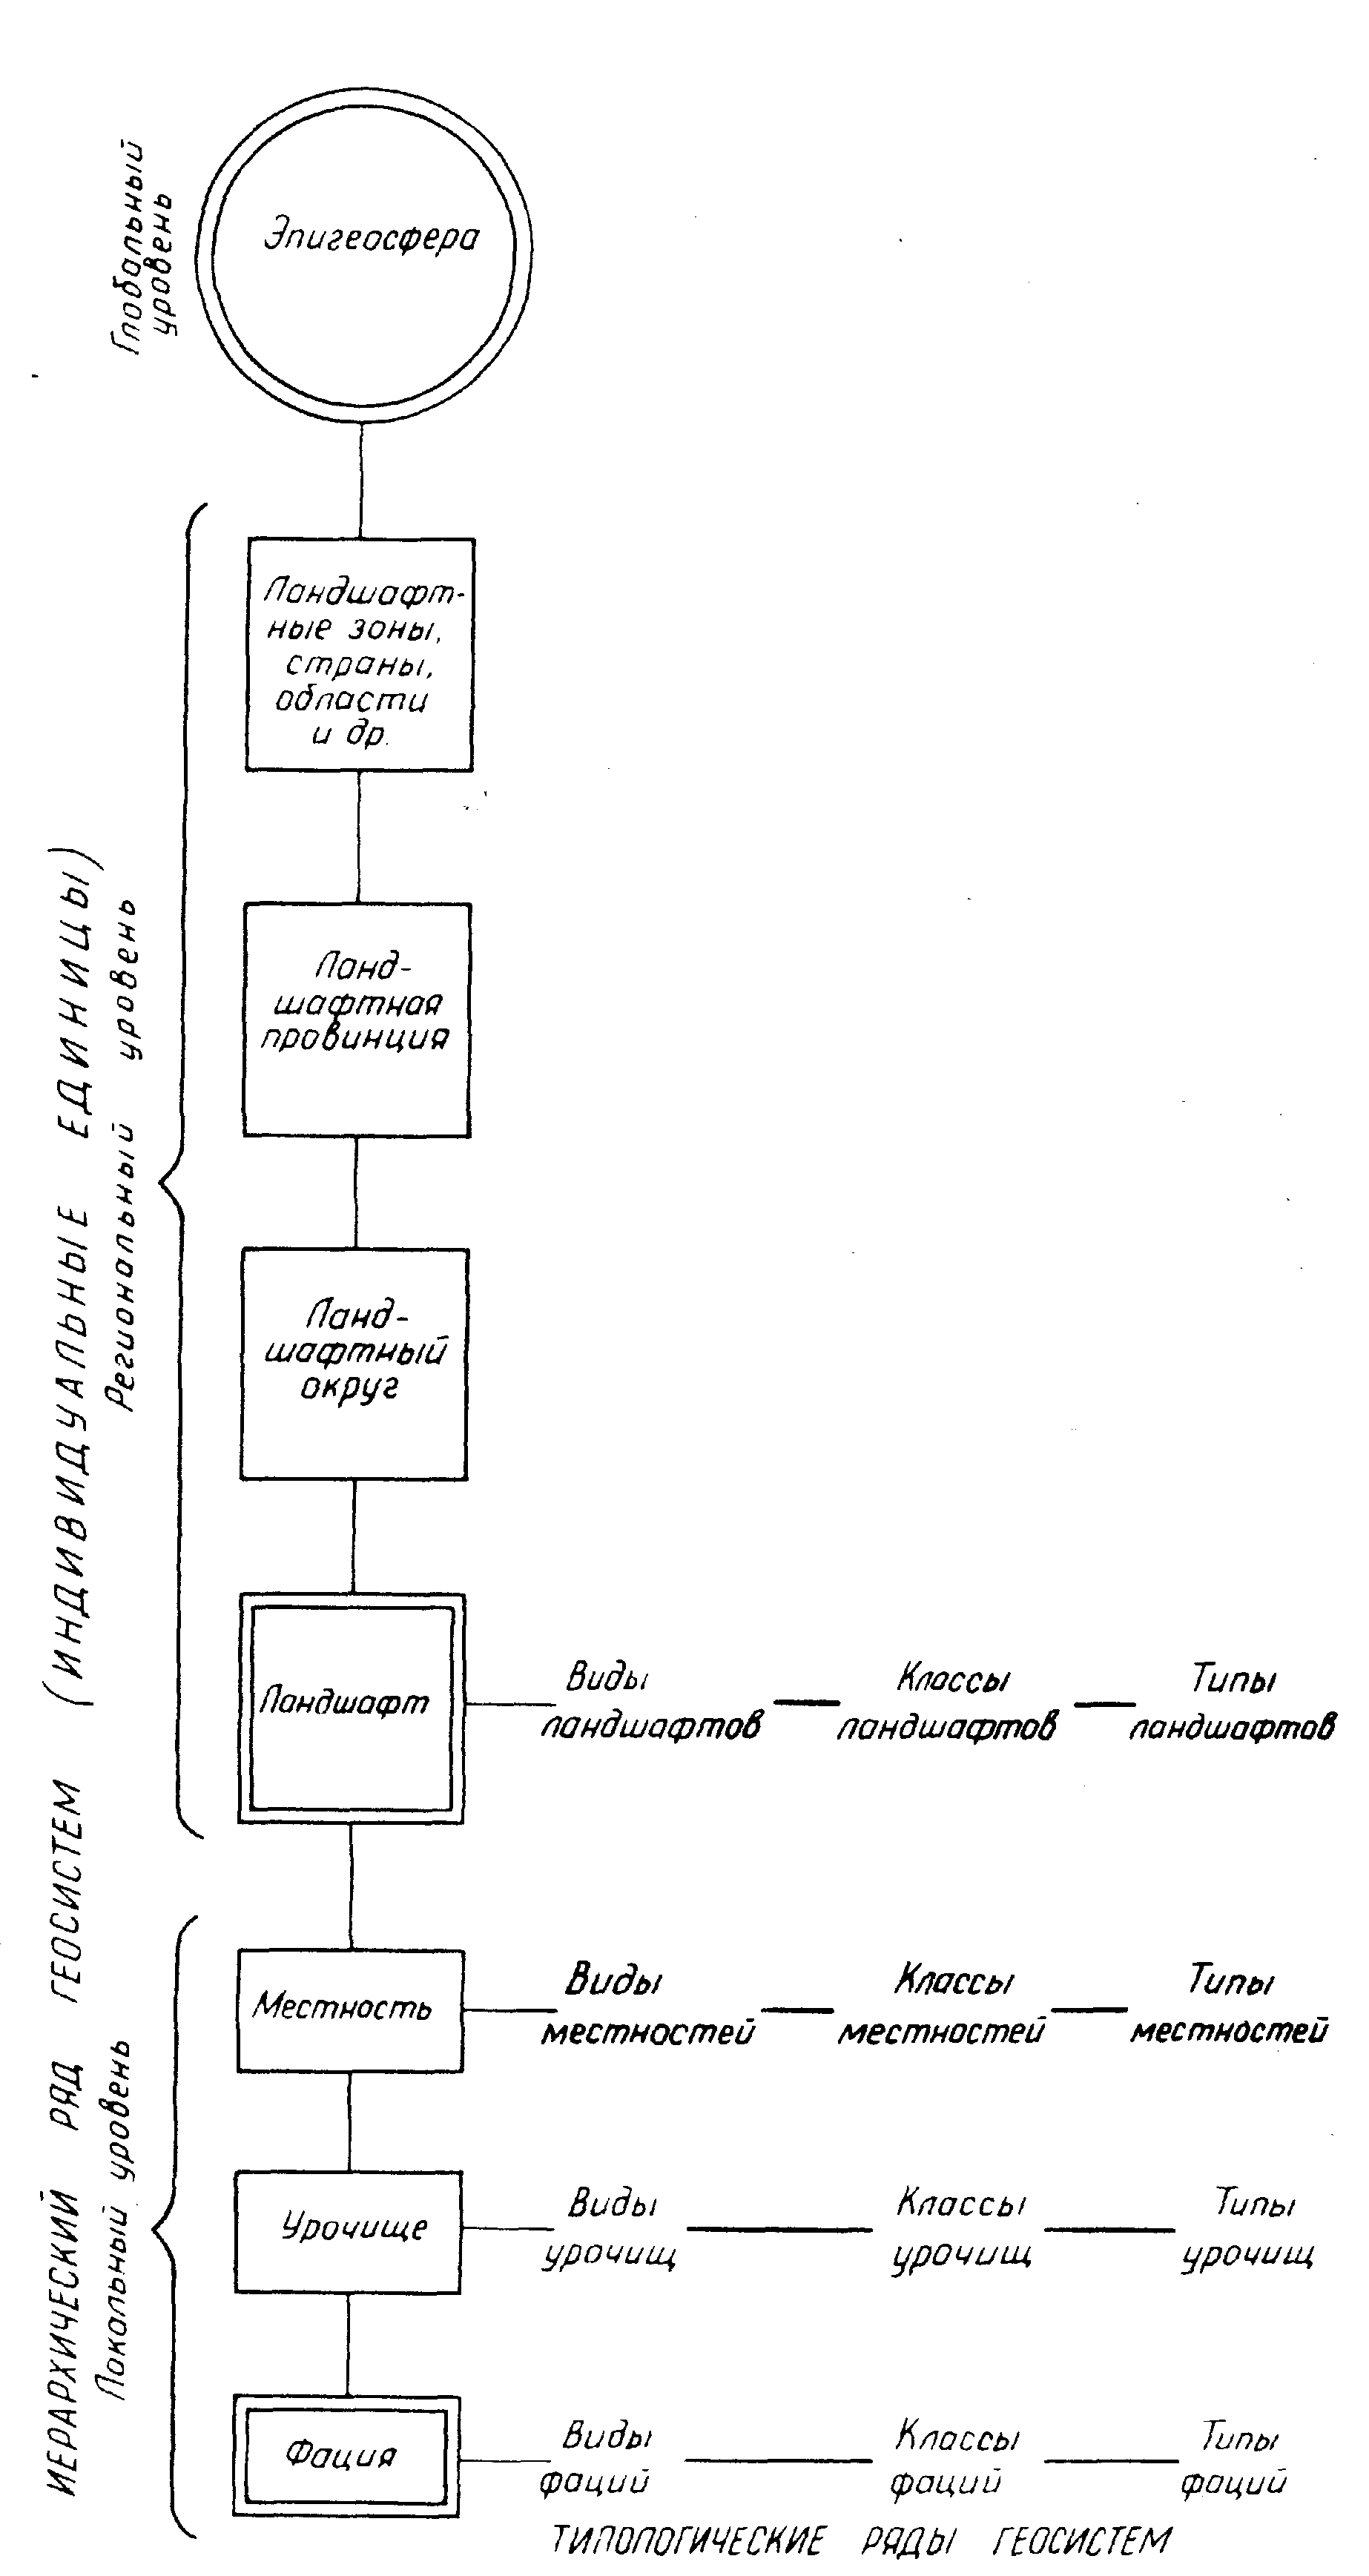 Рис. 1. Схема иерархии геосистем. А.Г. Исаченко, 1991.